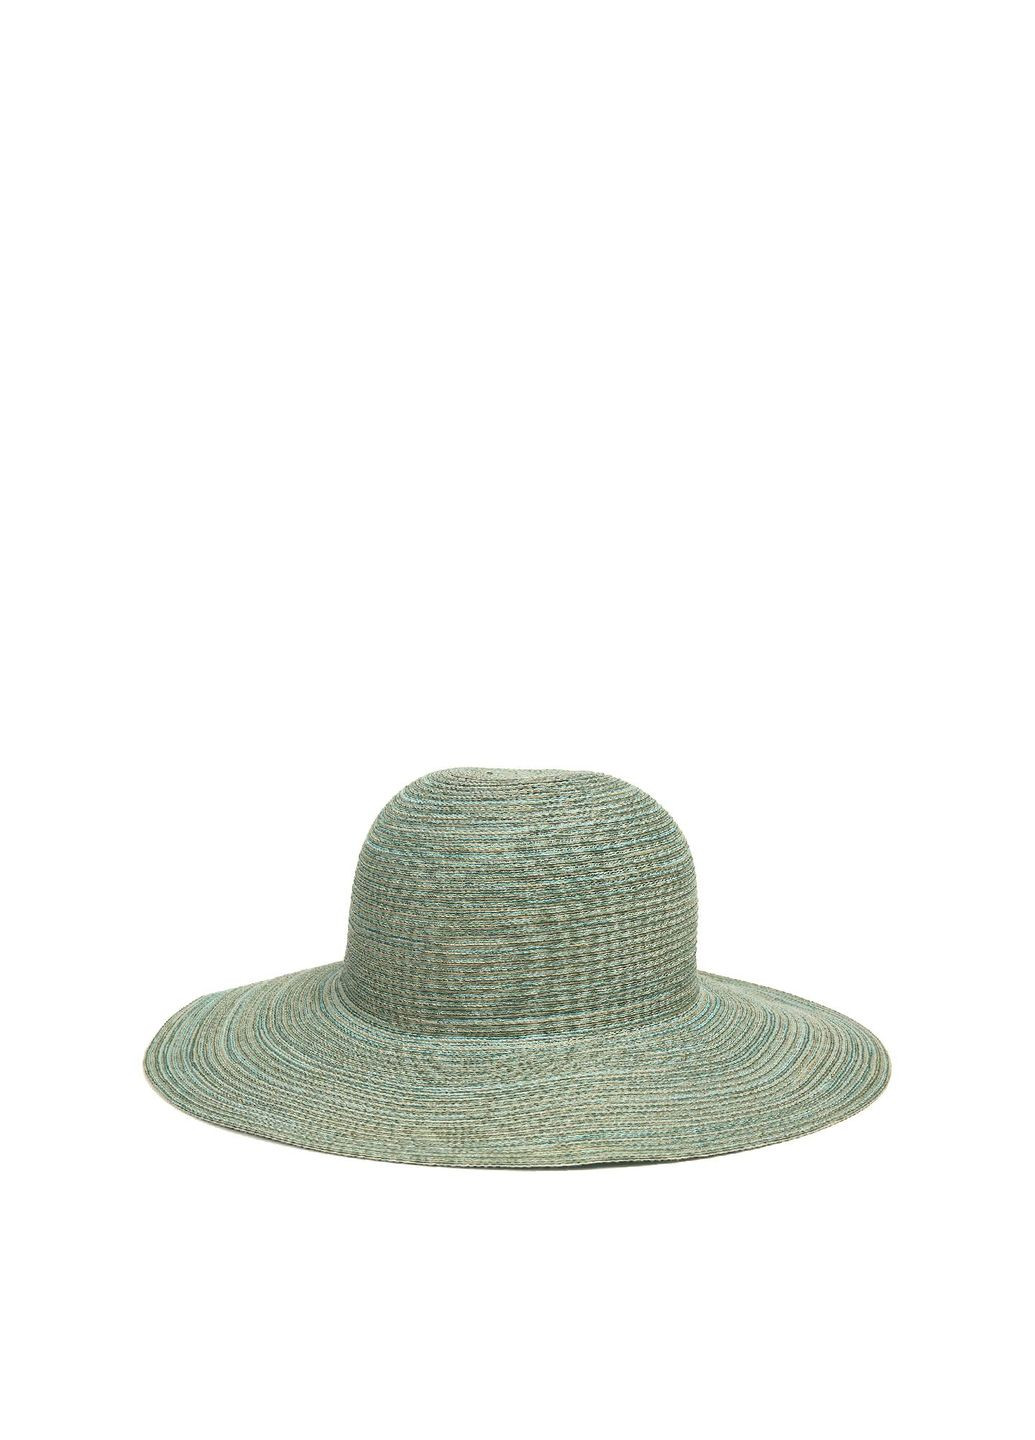 Шляпа слауч женская хлопок голубая ЯСМИН LuckyLOOK 855-381 (291884214)